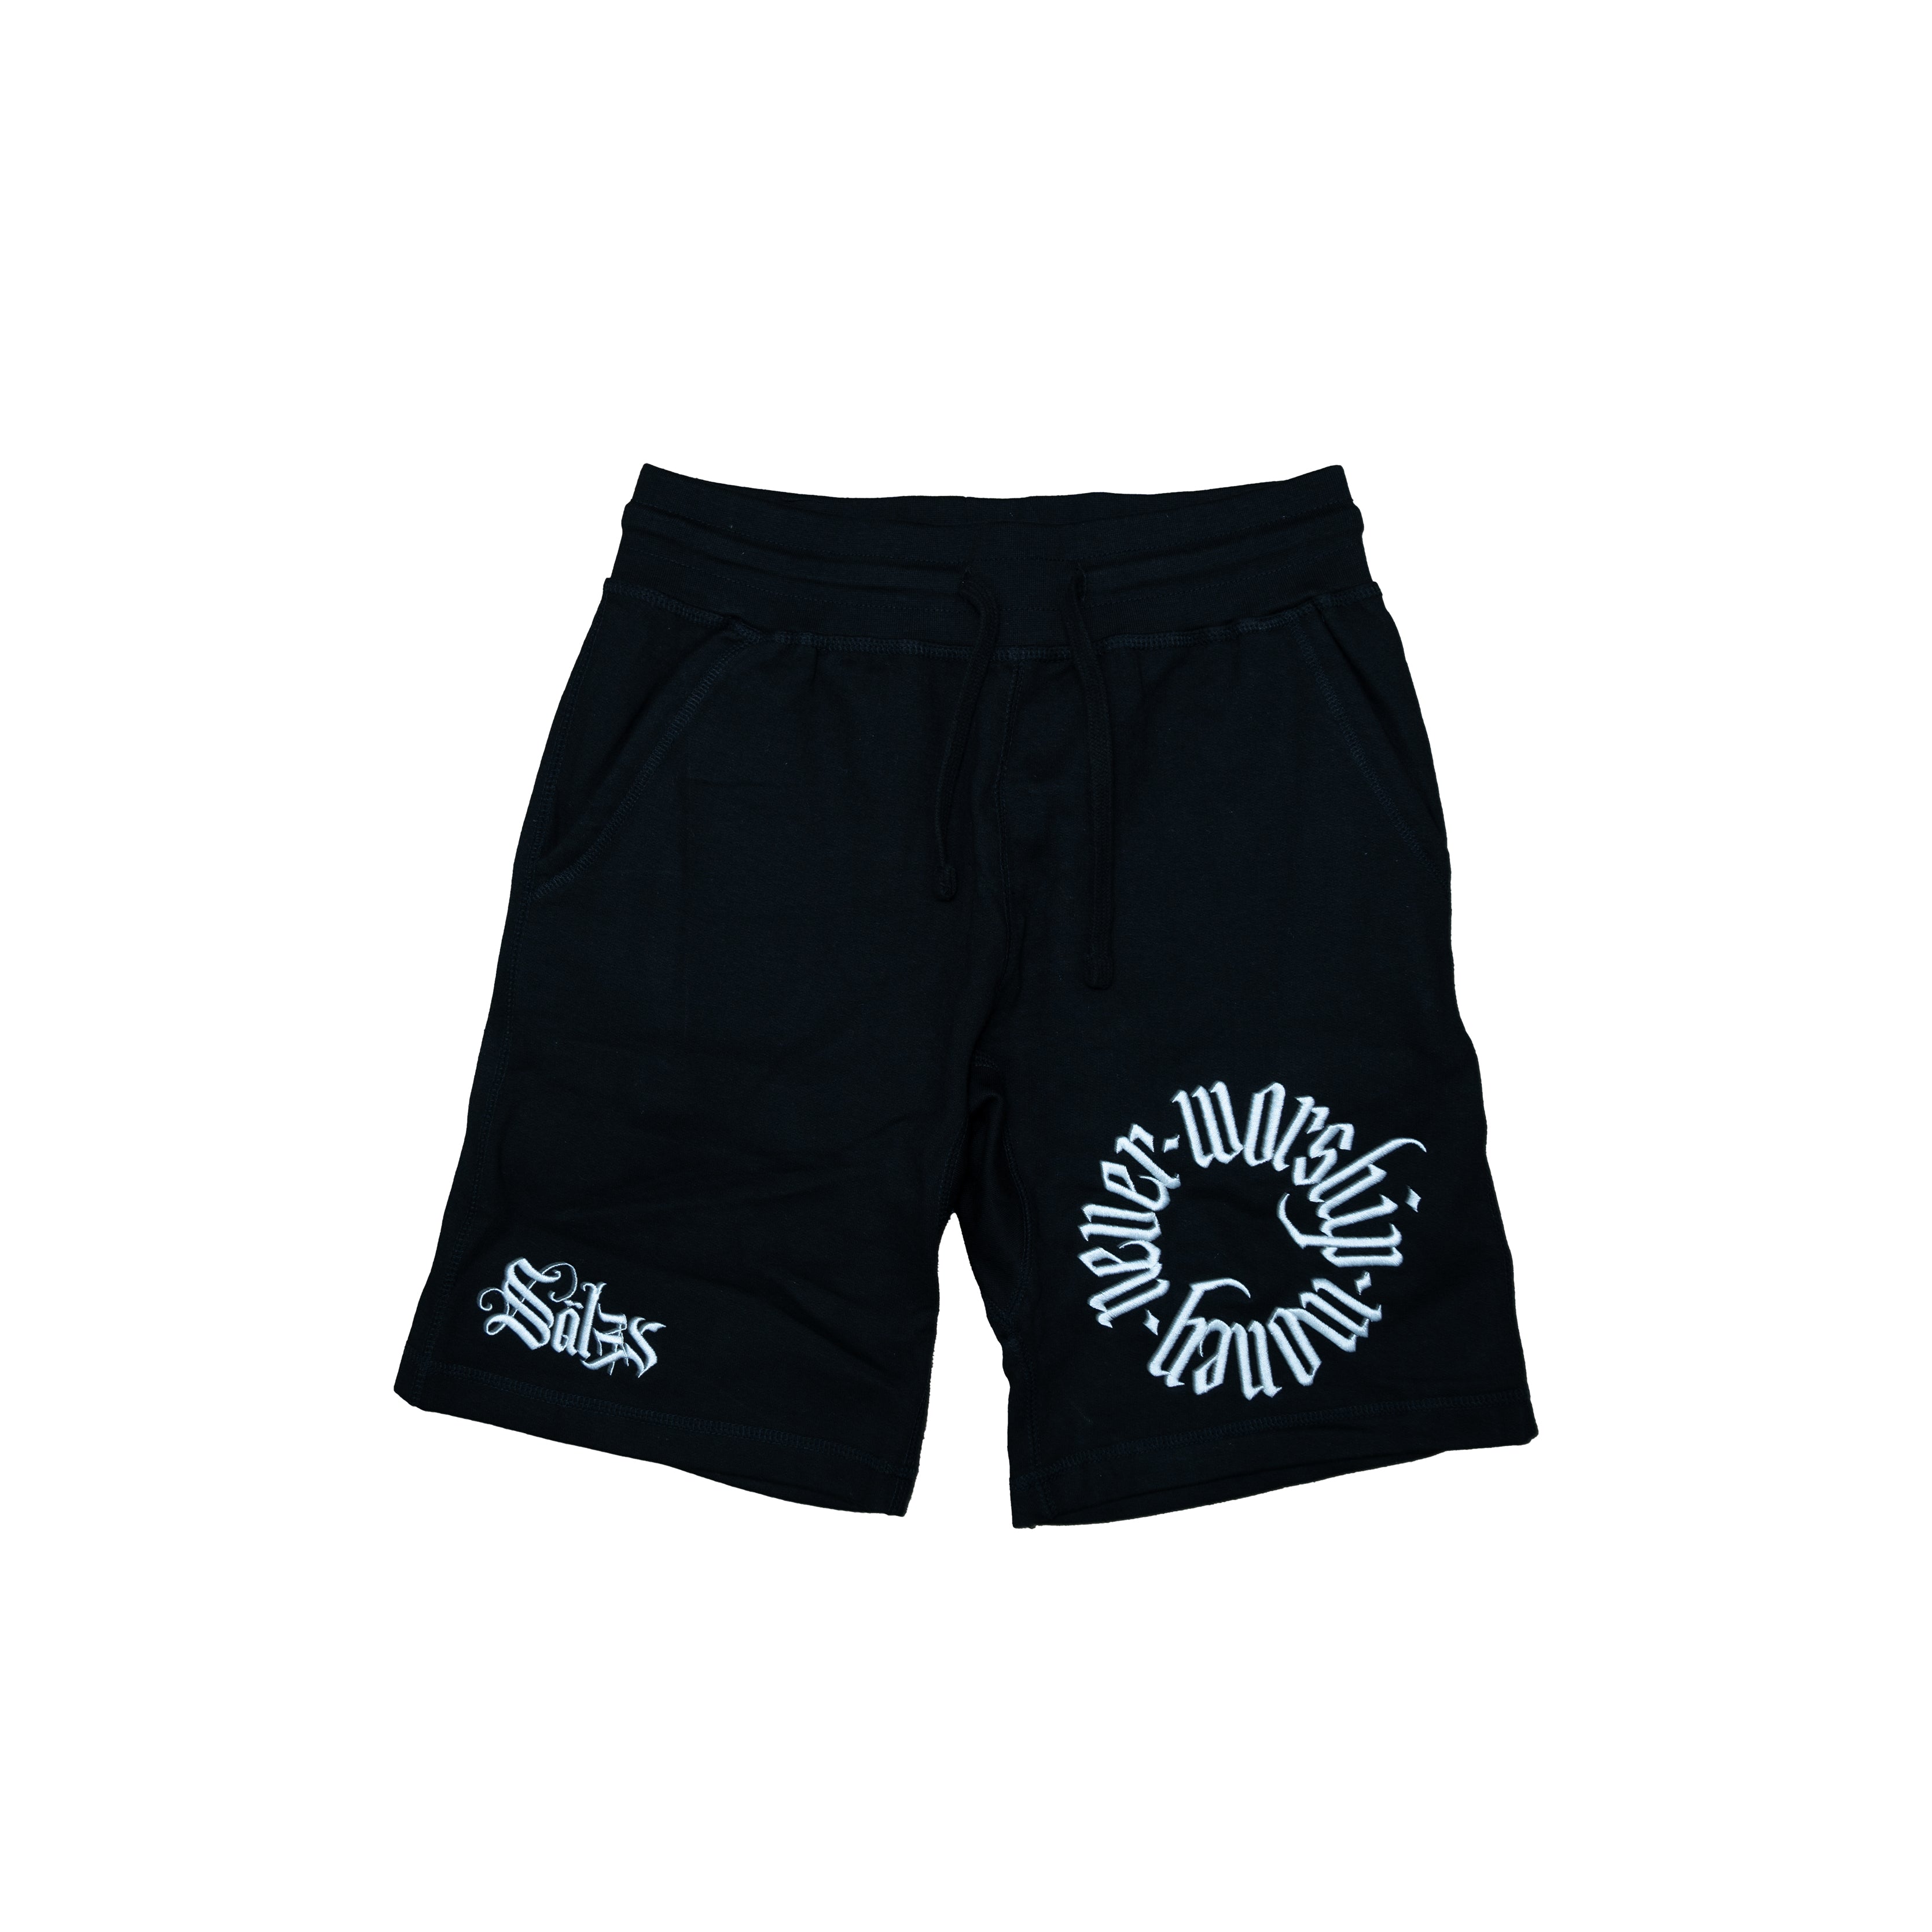 NW$ Shorts